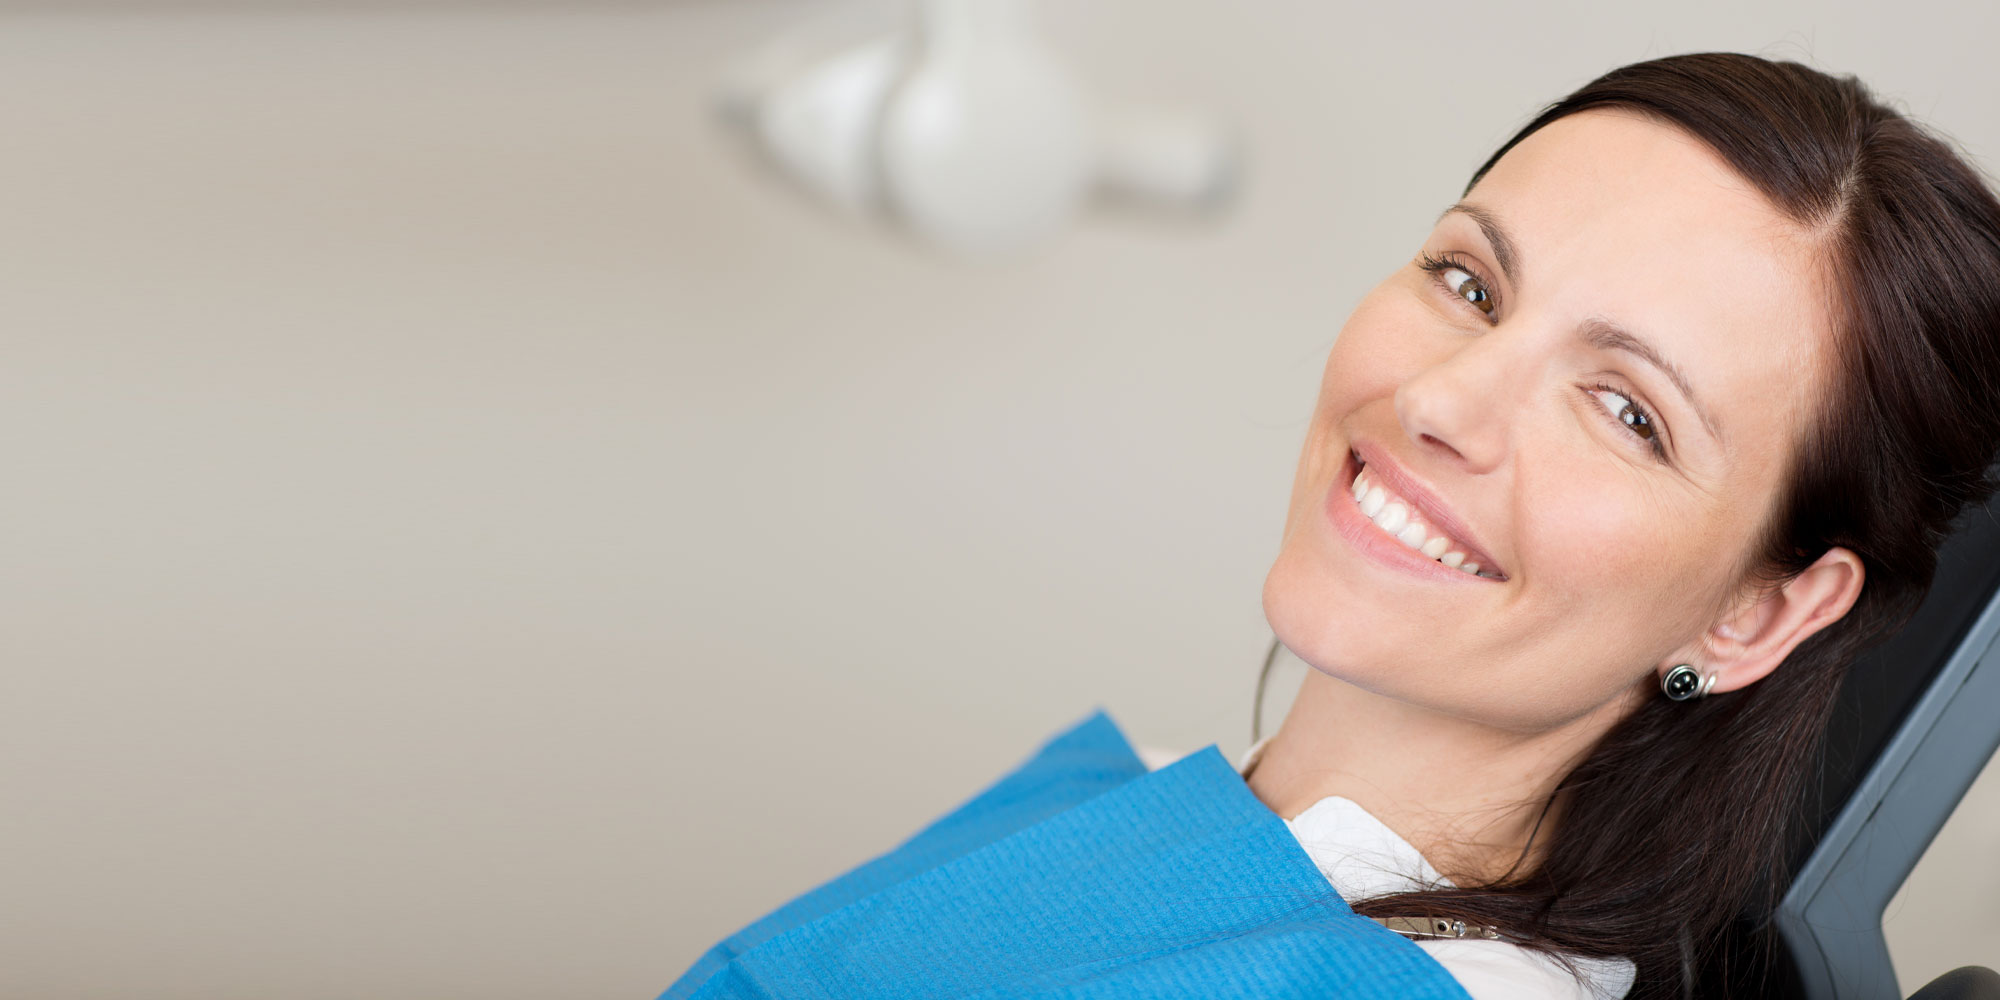 dental patient smiling after dental procedure